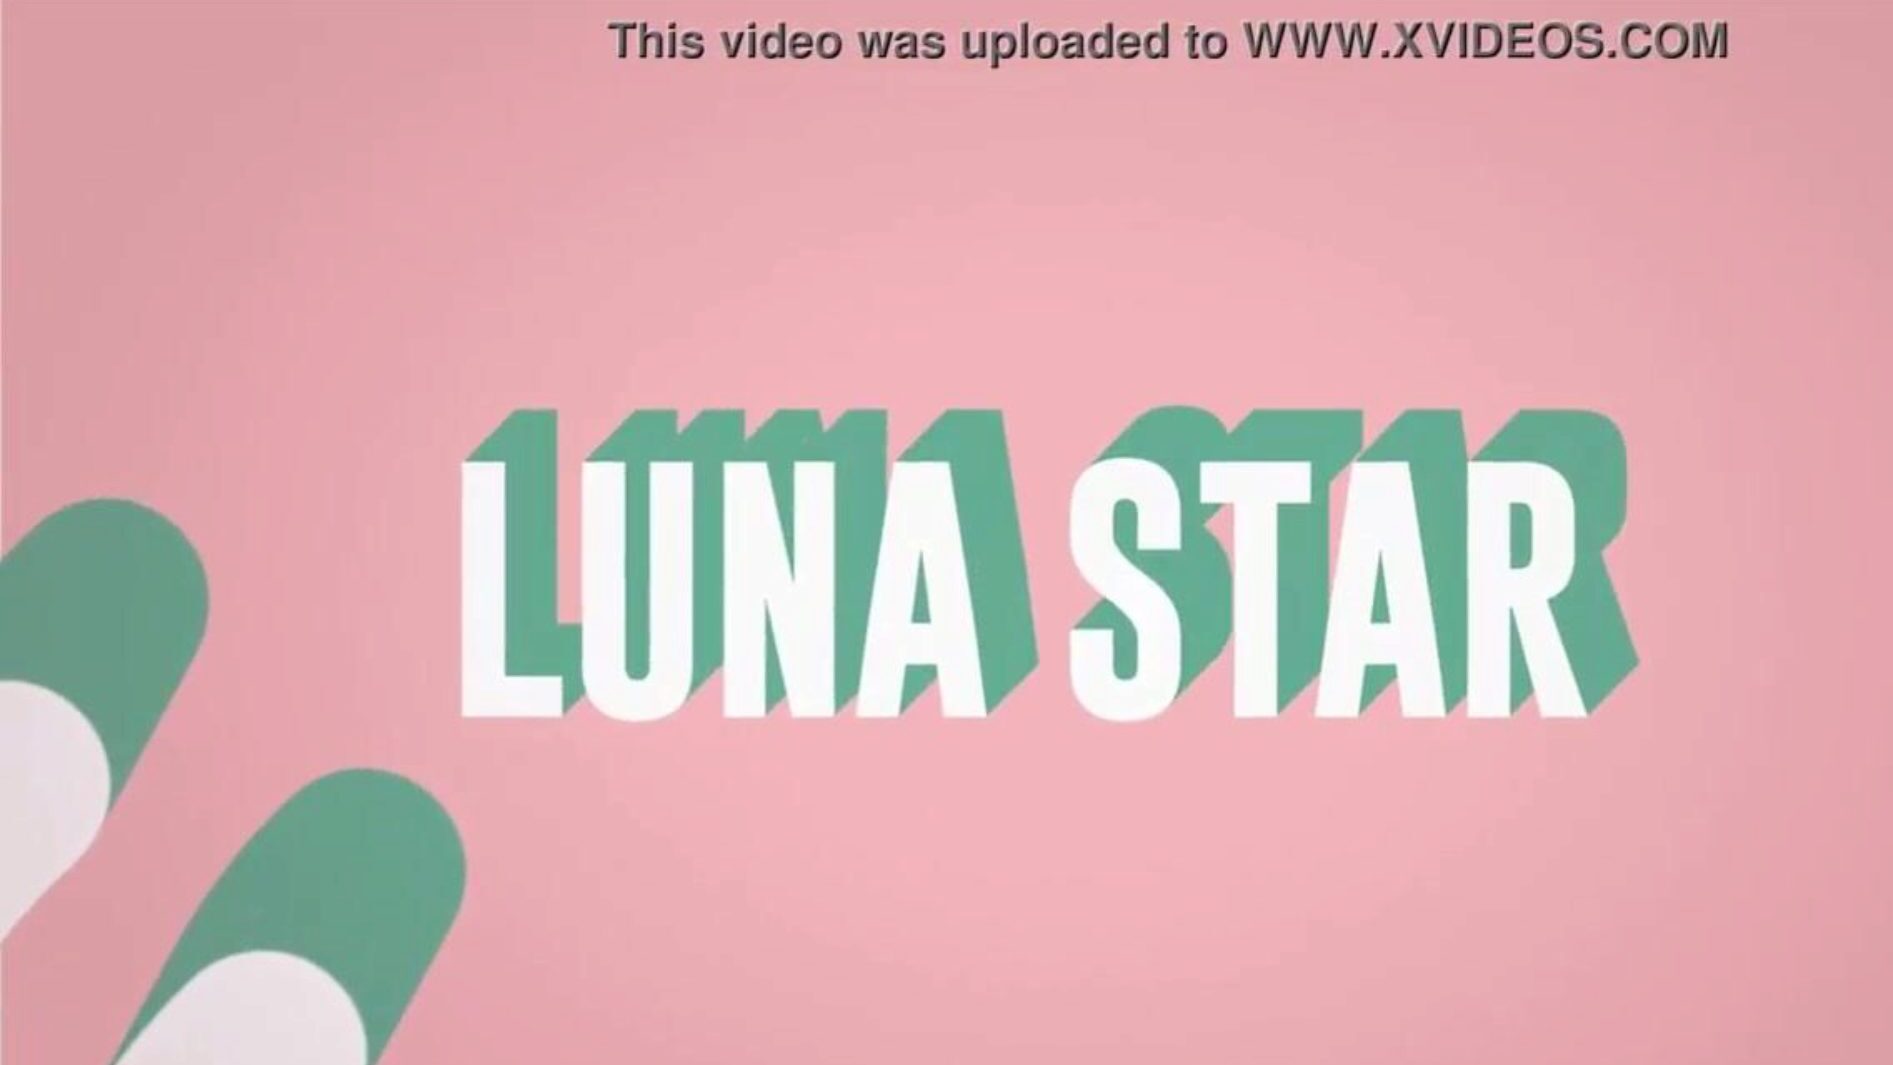 det er min skide wifi: brazzers gig med luna star; se fuldt ud på www.zzfull.com/luna